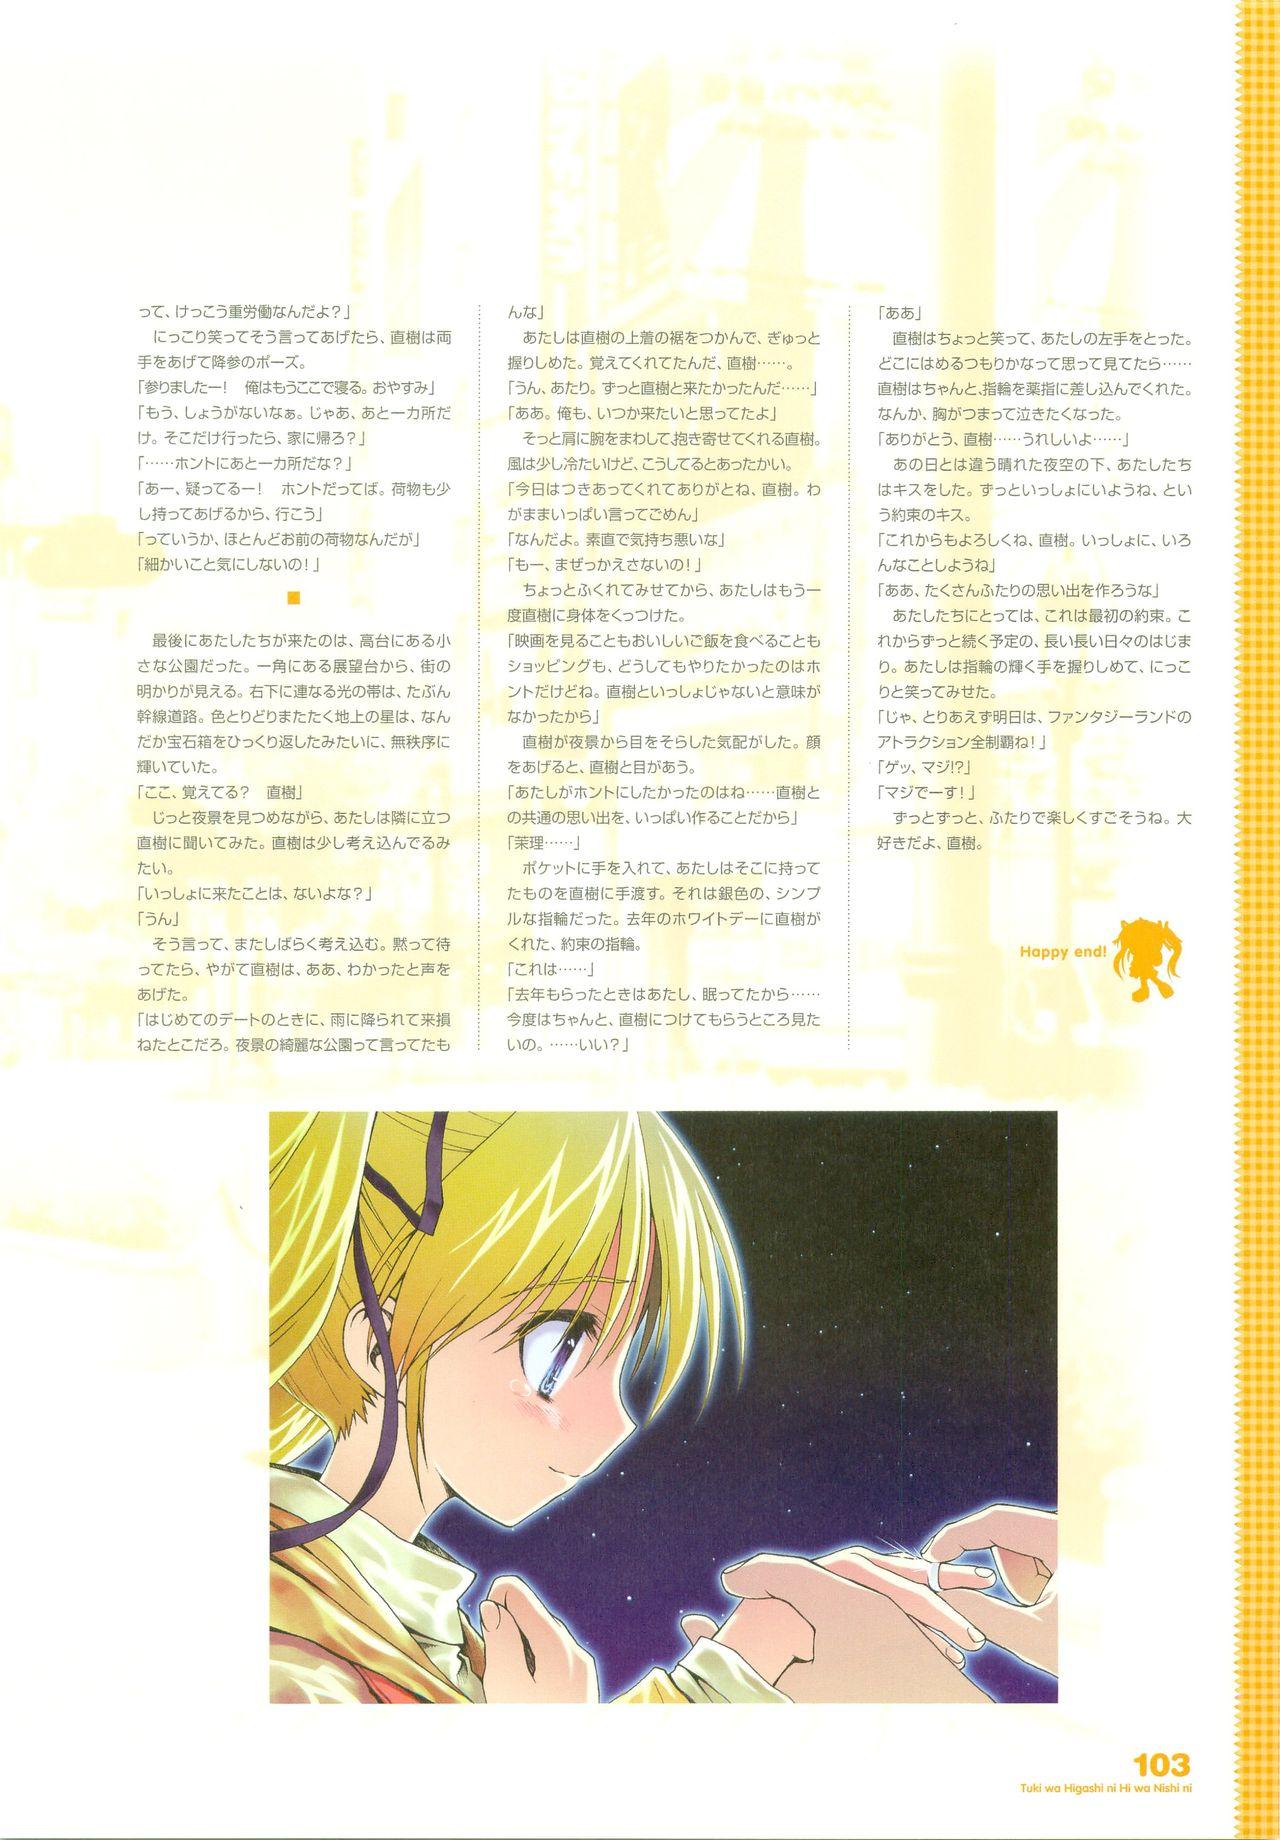 Tsuki wa Higashi ni Hi wa Nishi ni - Operation Sanctuary - Visual Fan Book Shokai Ban 130